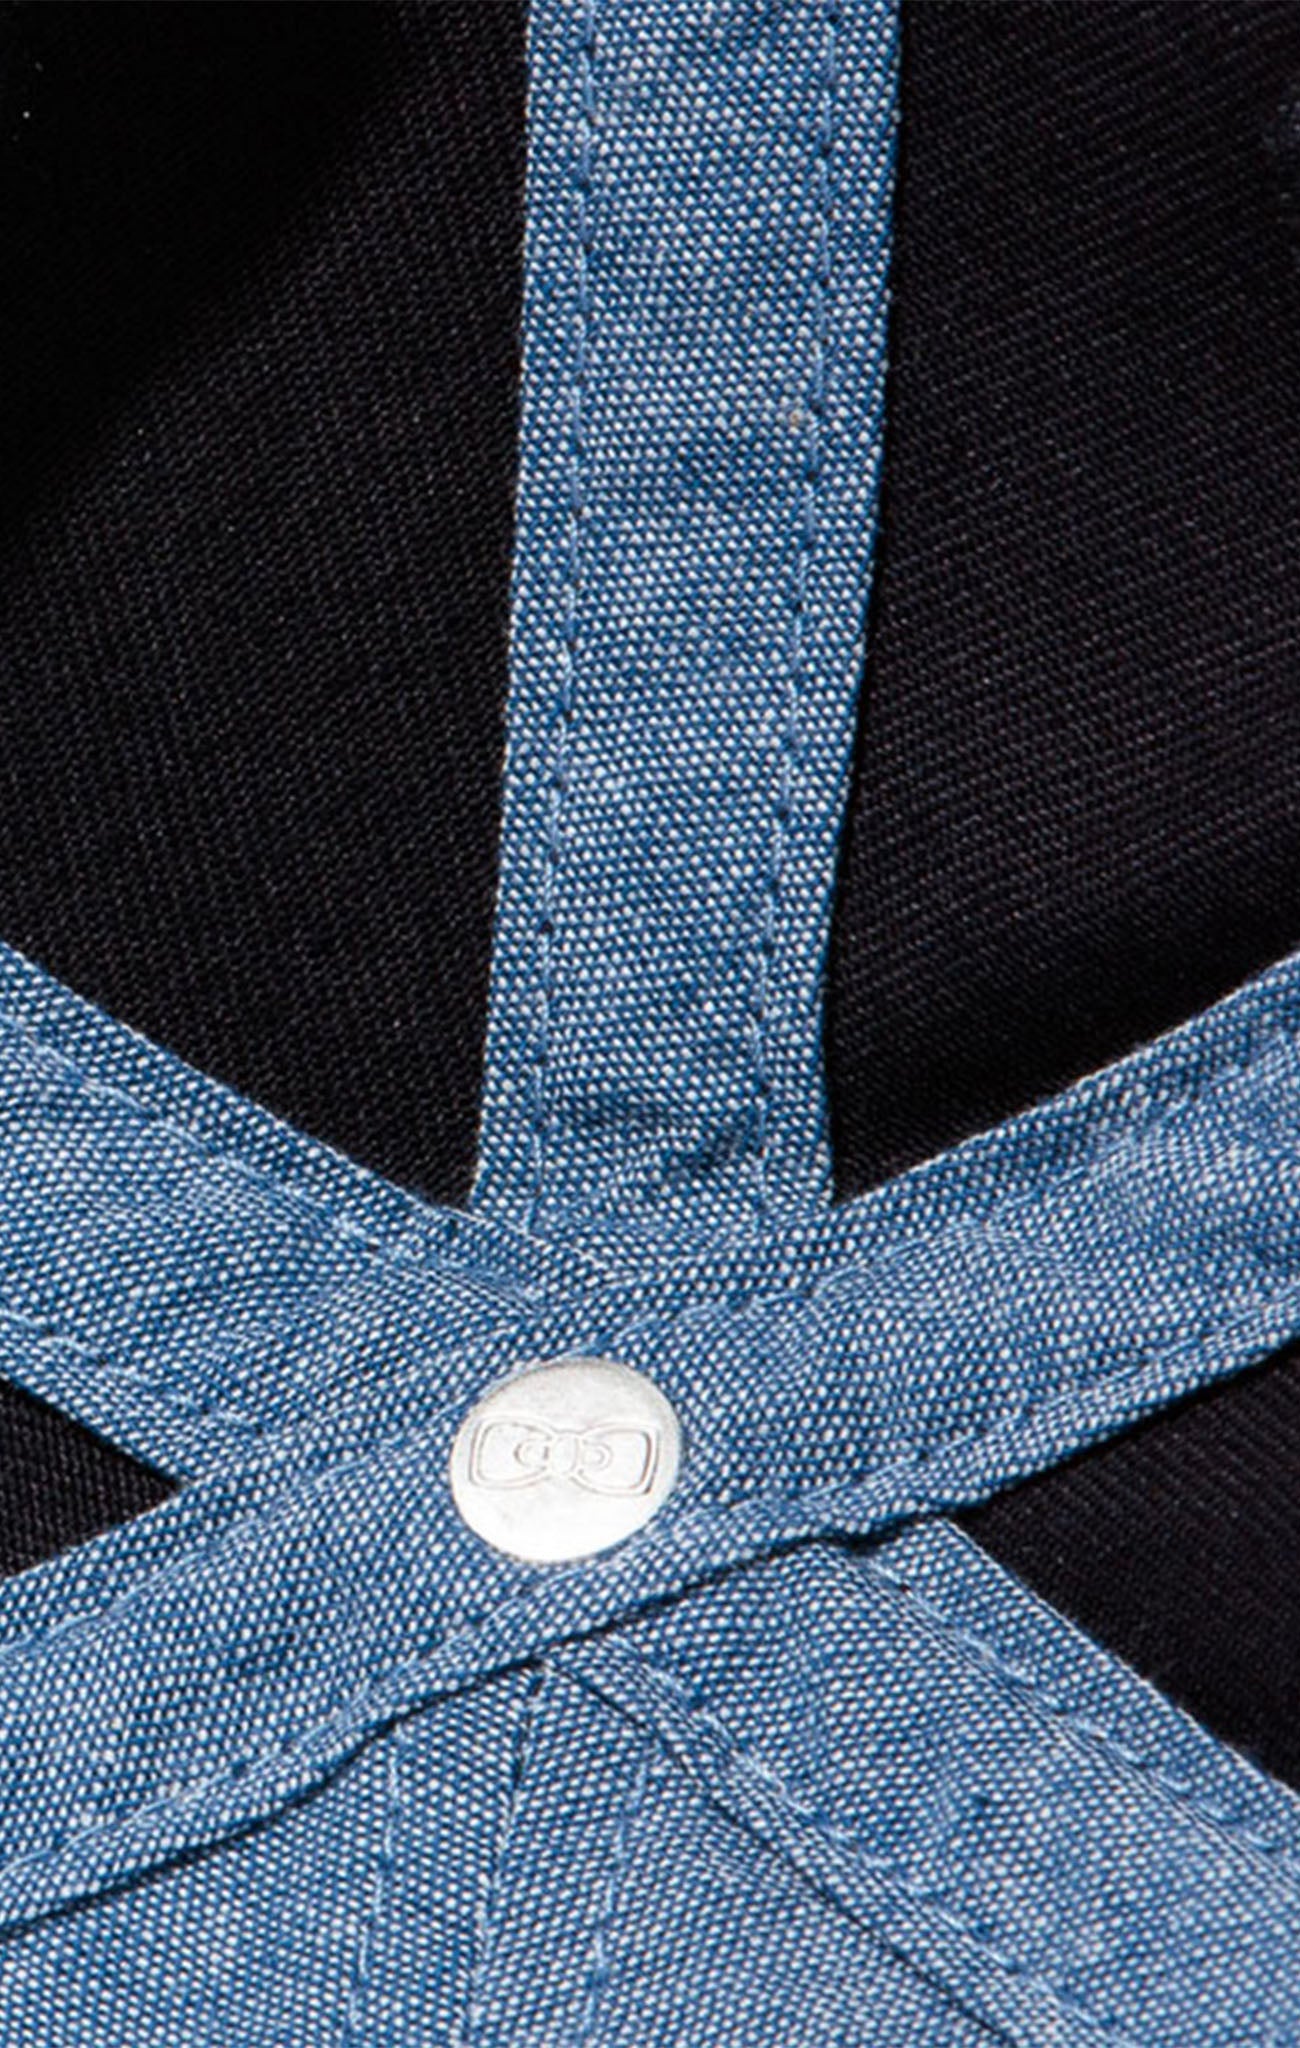 Casquette bleu marine unie en coton